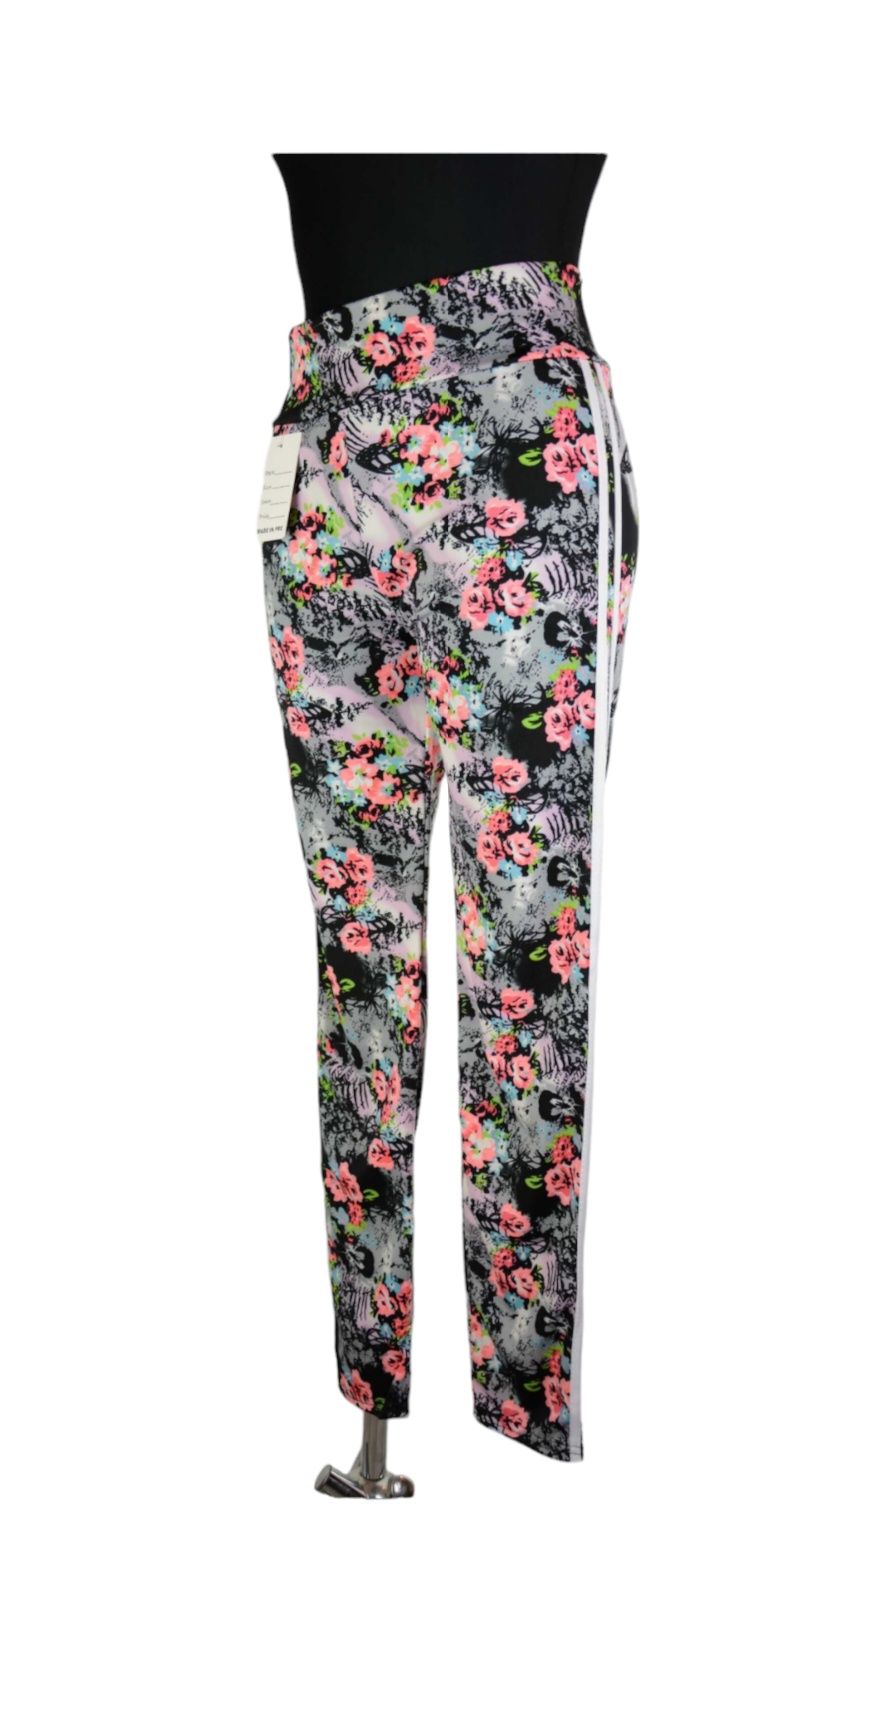 Spodnie damskie z lampasem, legginsy w kwiaty, rozmiar M/L